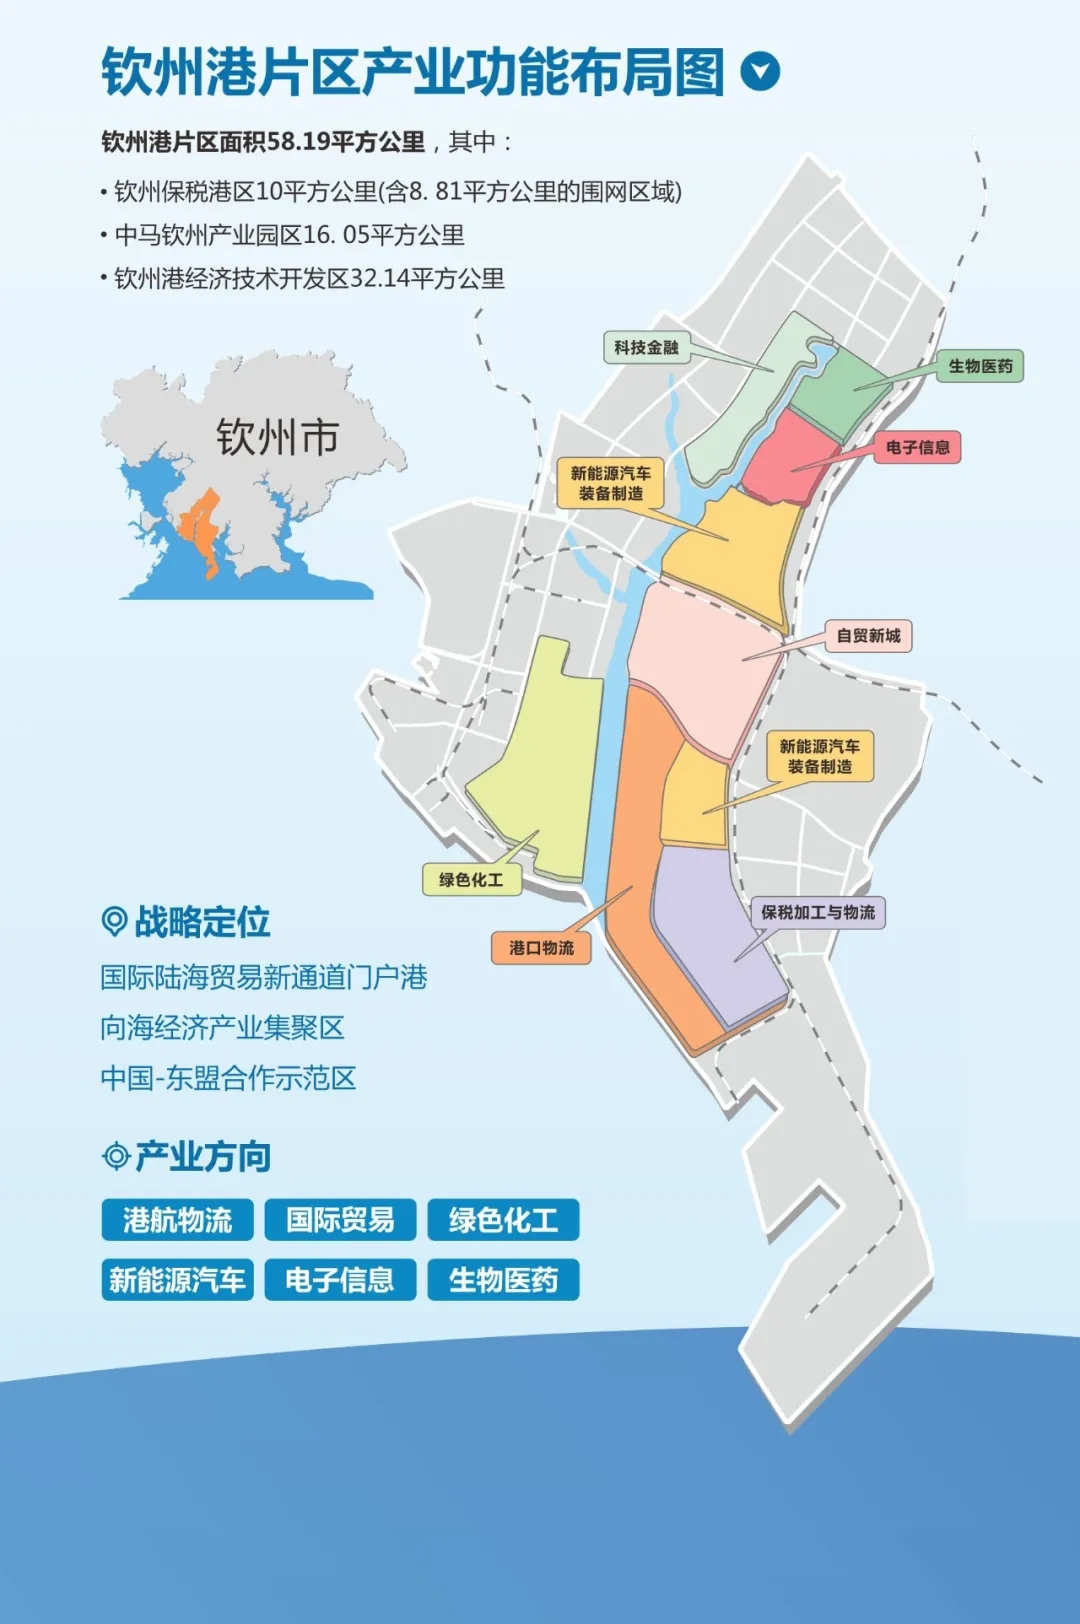 广西自贸试验区涵盖南宁,钦州港和崇左三个片区,其中钦州港片区面积58